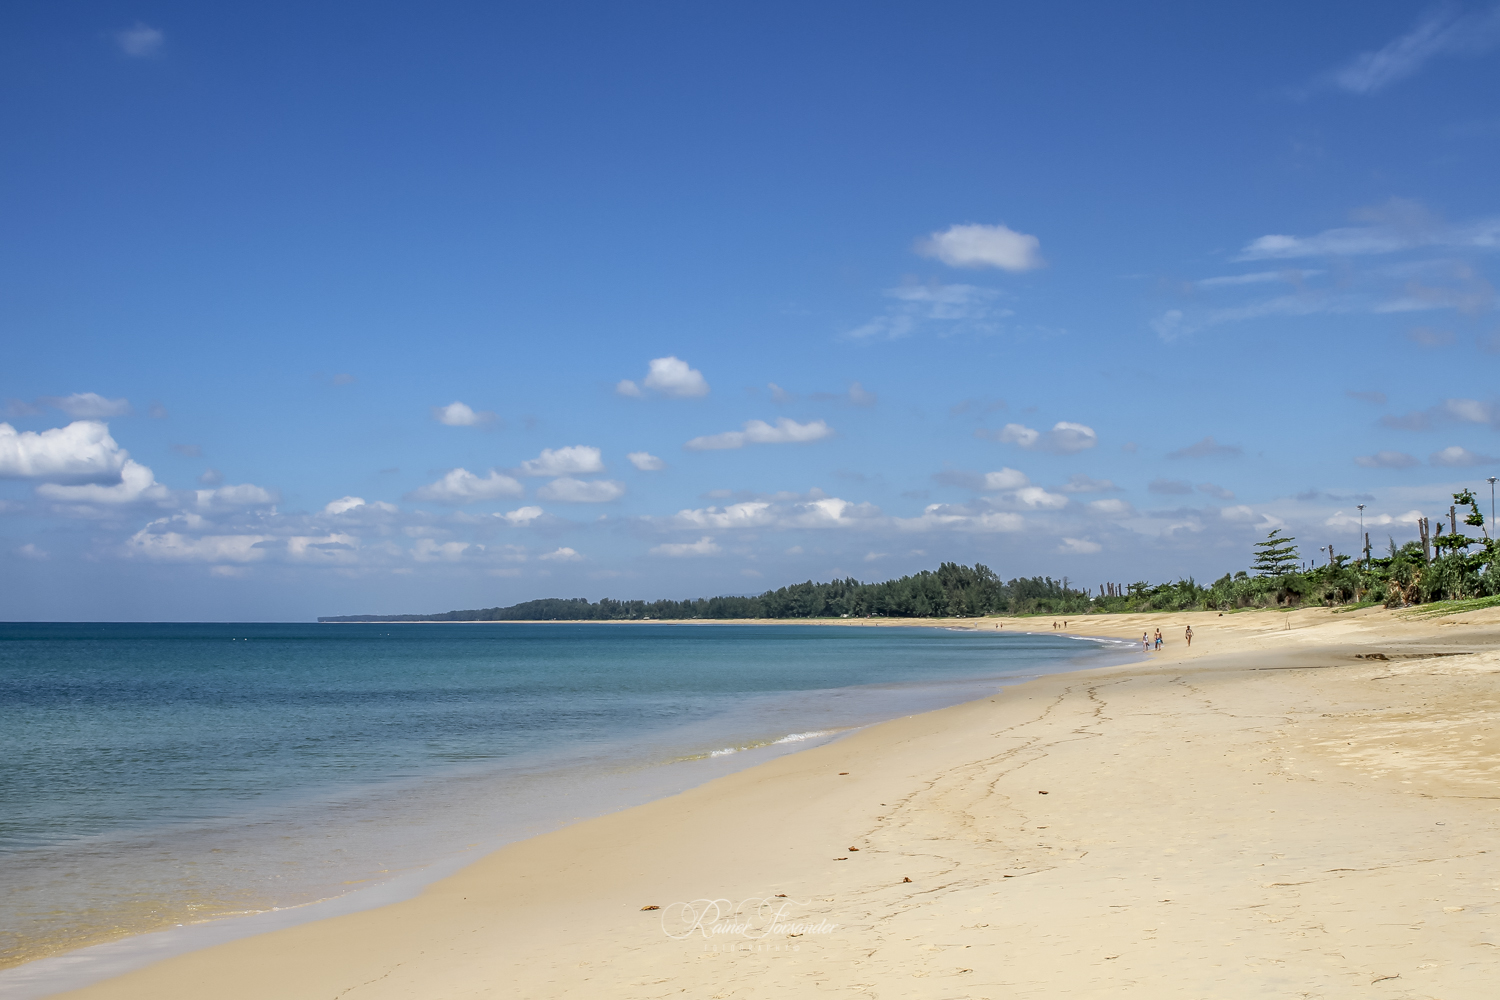 Fotografie cu Naiyang Beach - locul popular printre cunoscătorii de relaxare